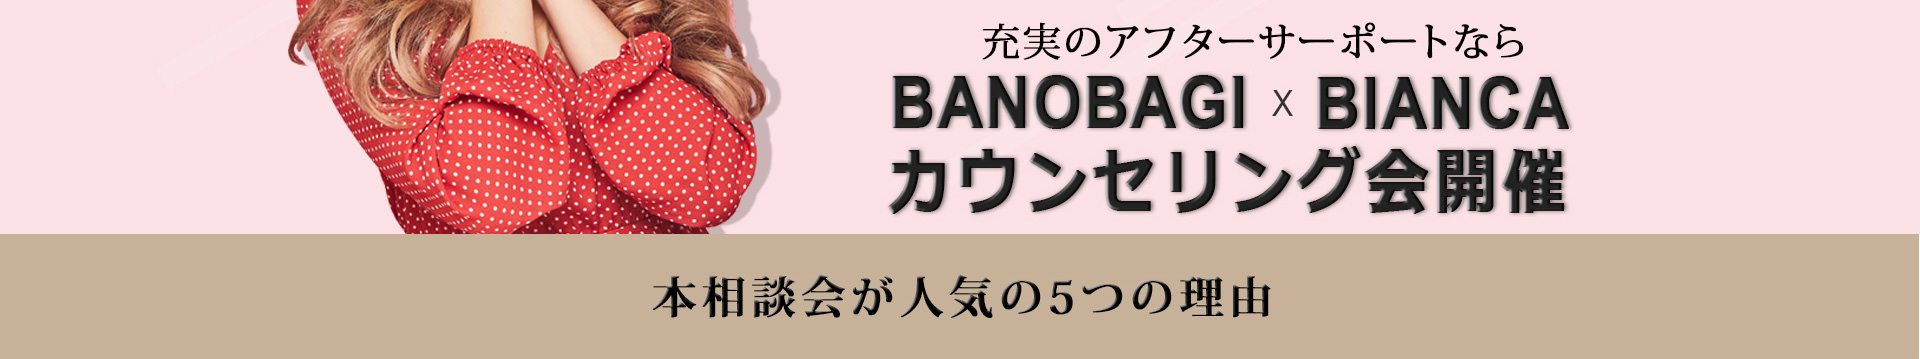 BANOBAGI x BIANCA カウンセリング会開催